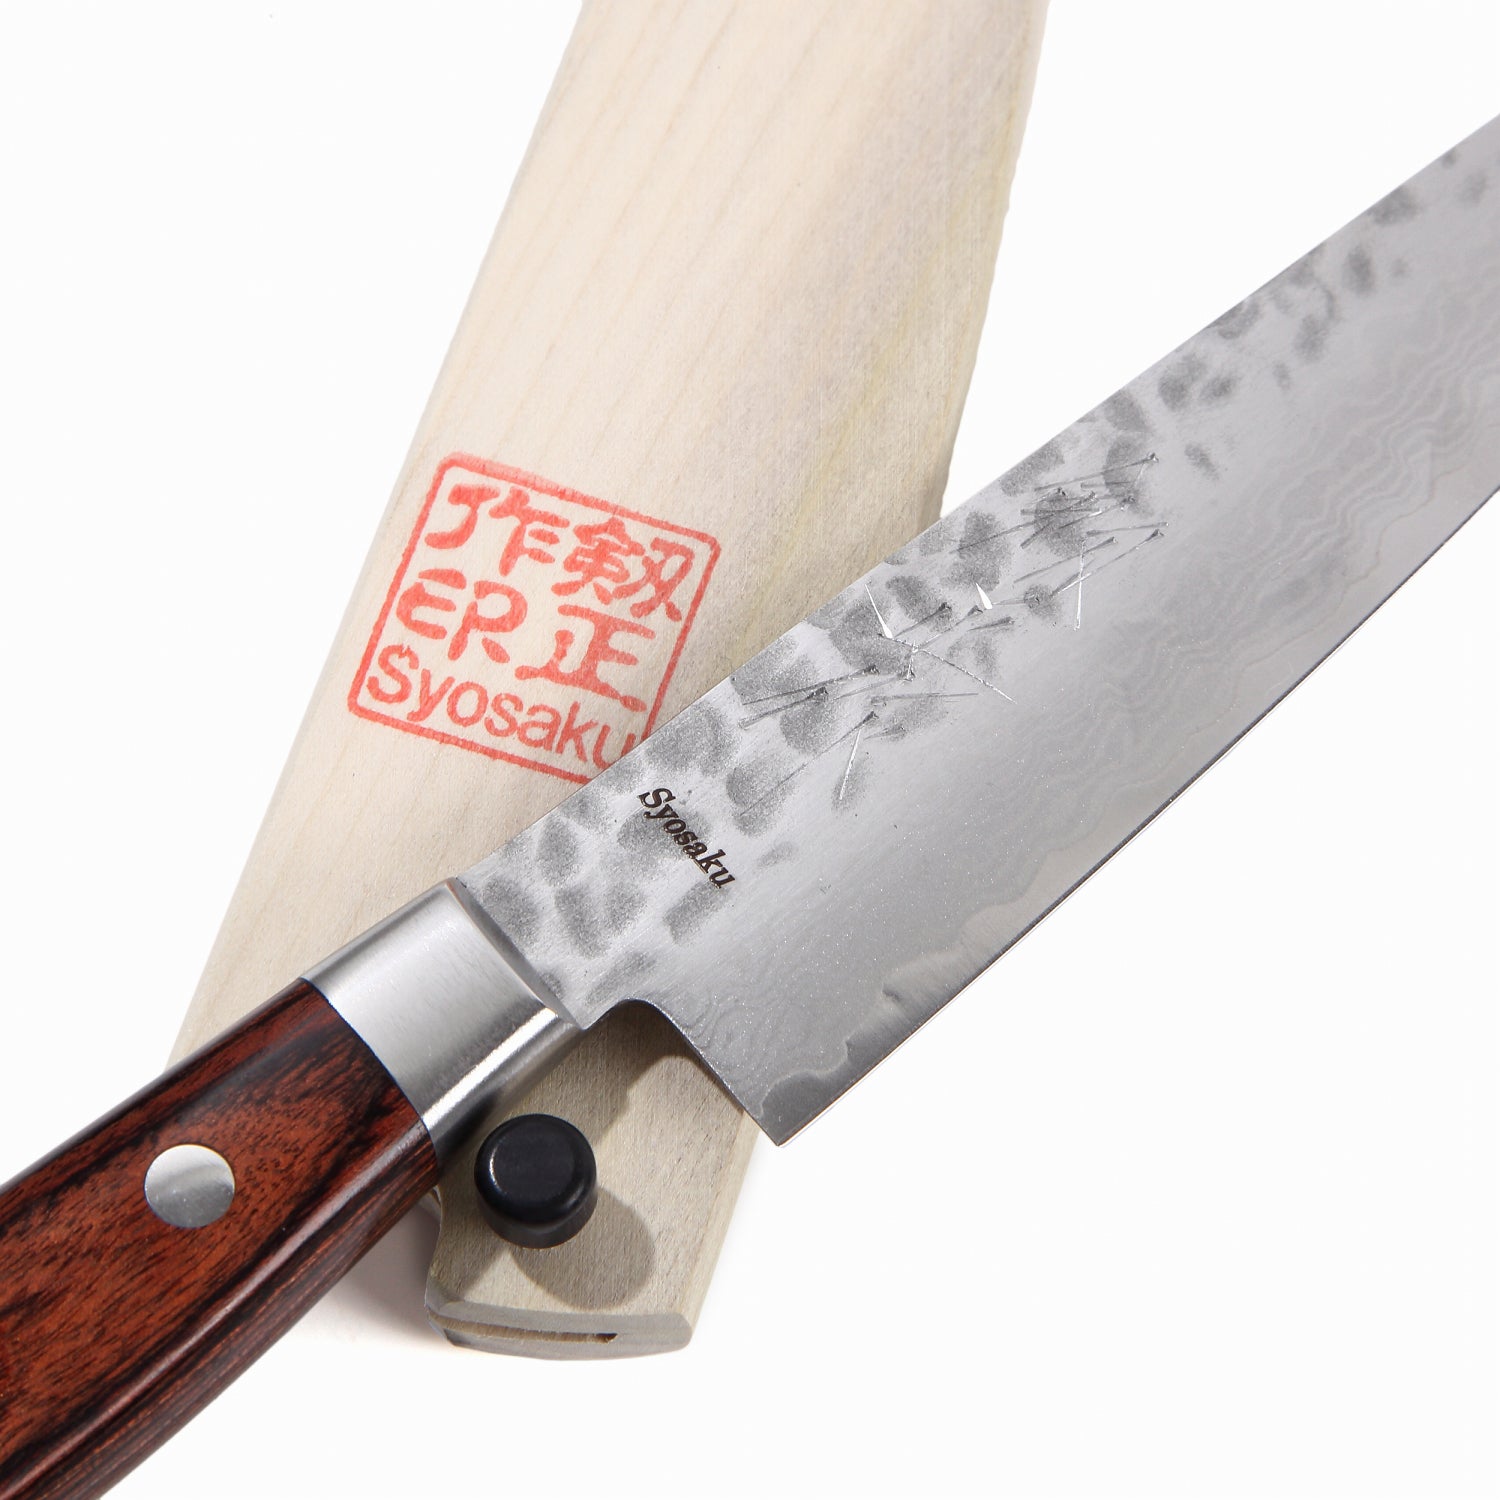 Syosaku Japanese Petty Knife Damascus ZA18 69 Layer Octagonal Walnut Handle, 6-Inch (150mm)